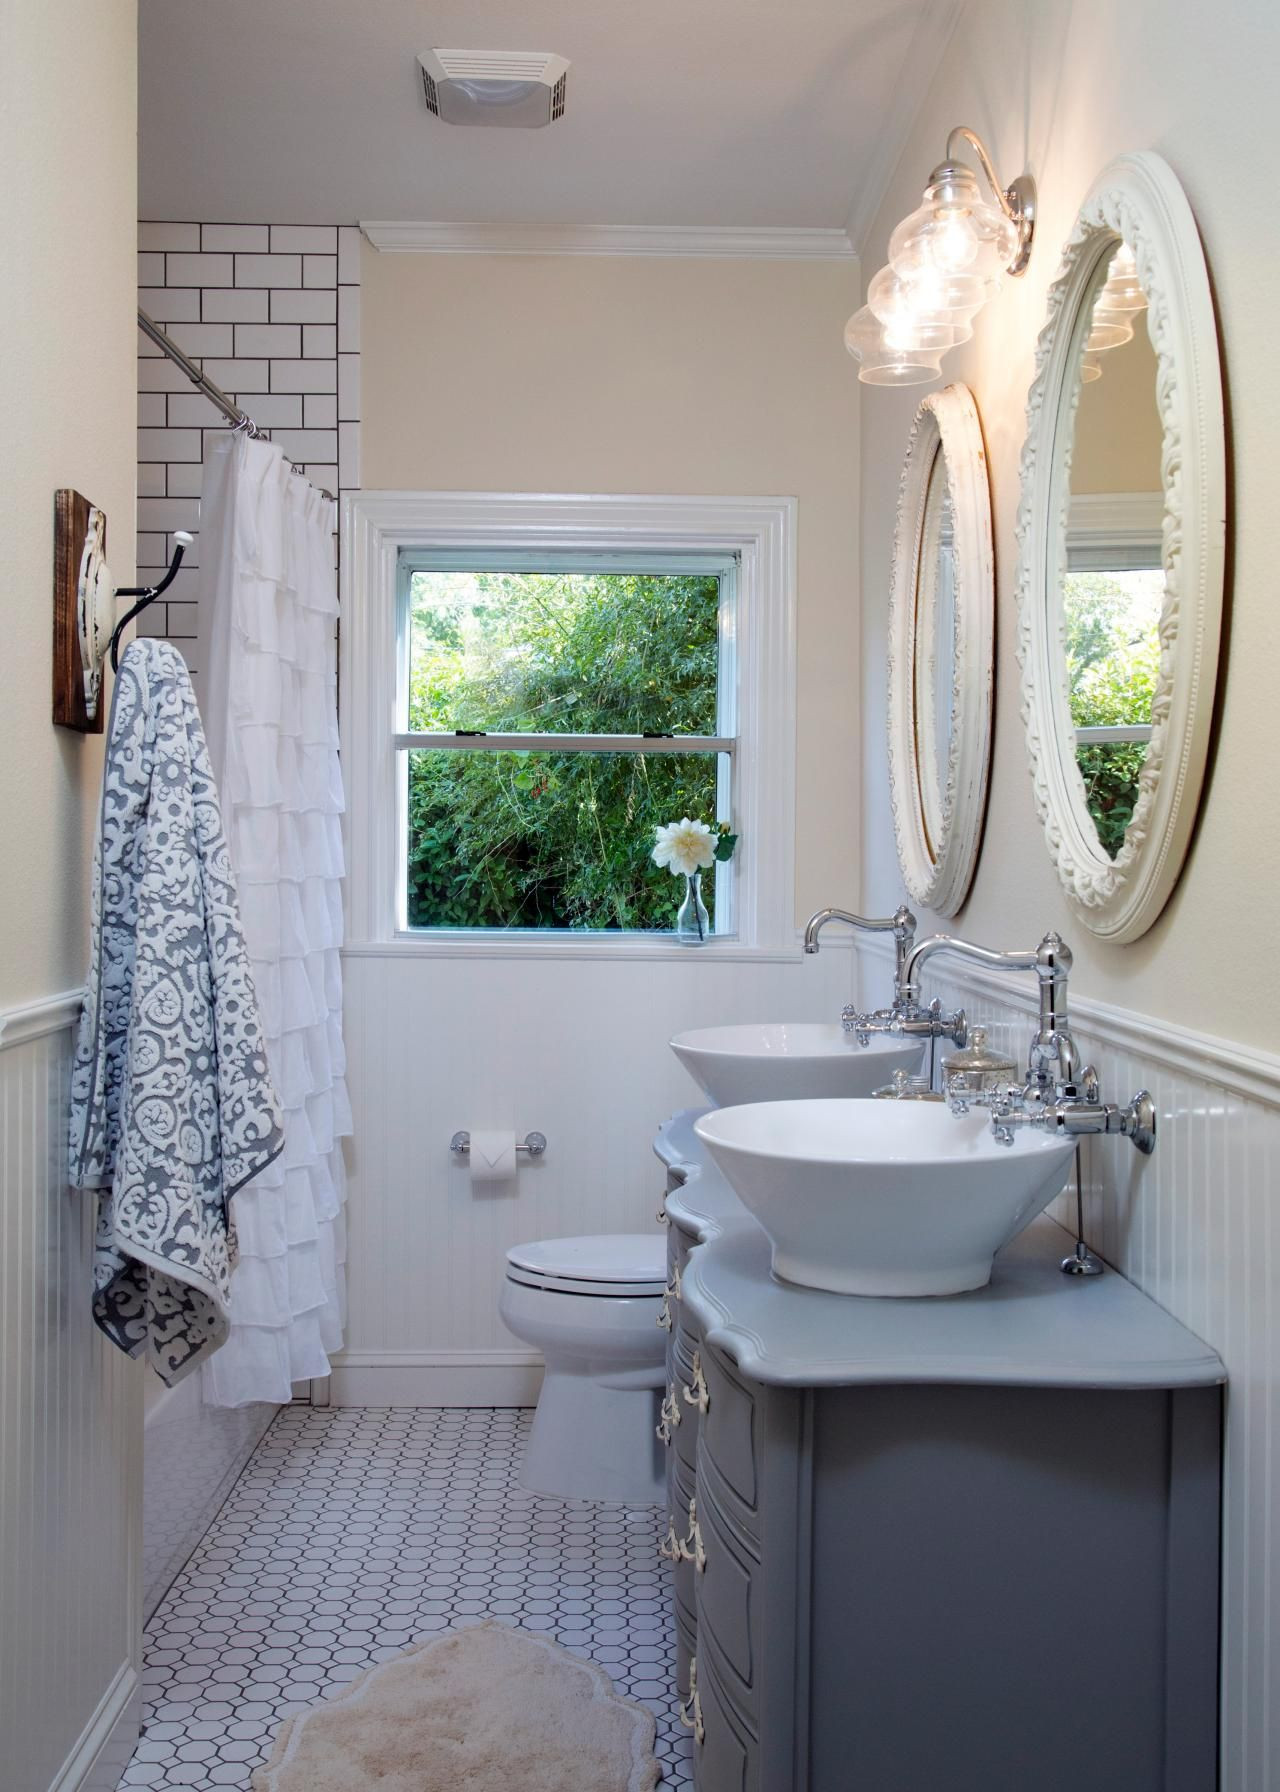 Joanna Gaines Bathroom Design
 Fixer Upper s Best Bathroom Flips Bathroom